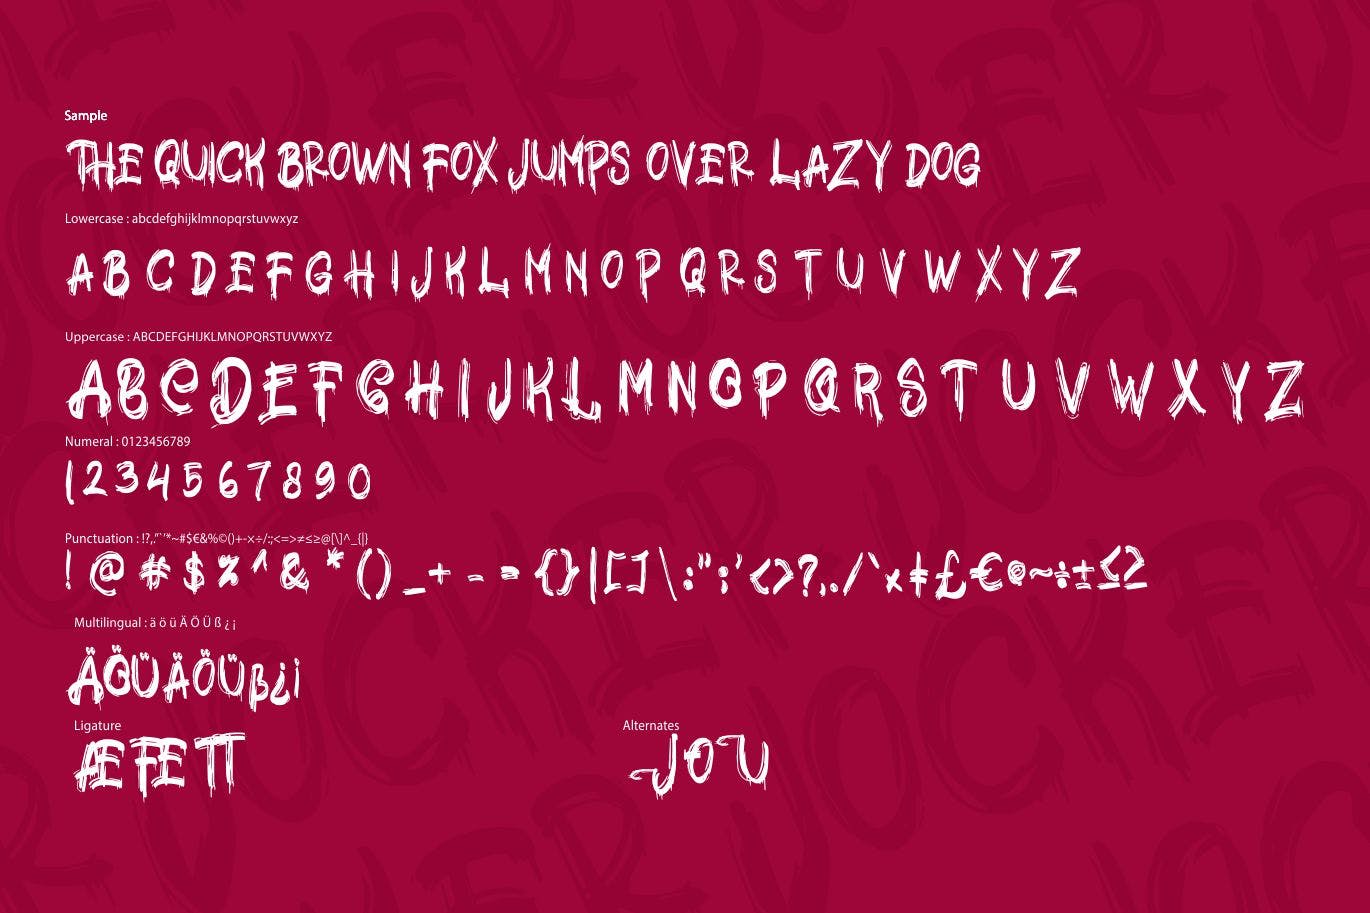 极具个性的英文笔刷装饰字体素材天下精选 Jocker | Psychotype Font Theme插图(5)